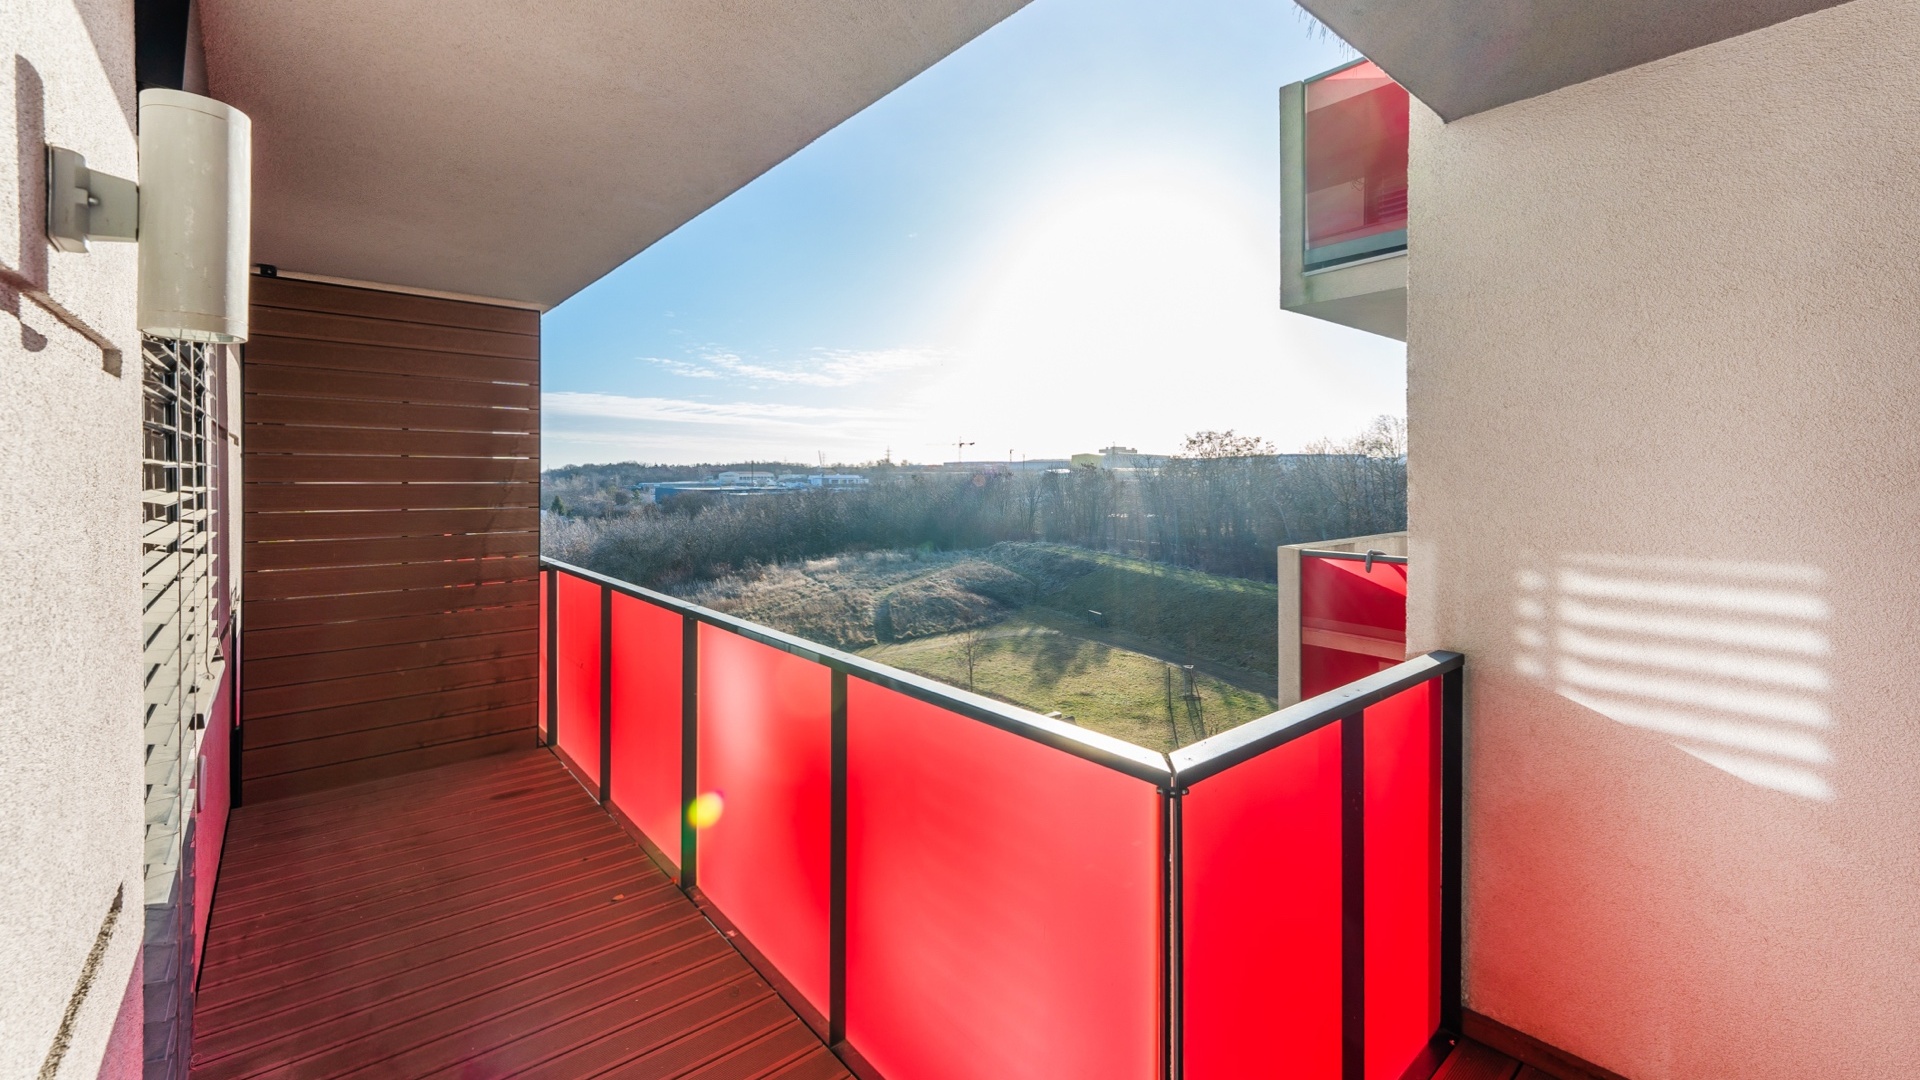 Krásný prostorný byt 3+kk k pronájmu, 106 m2, terasa, zimní zahrada, parkování, Praha 5 - Stodůlky